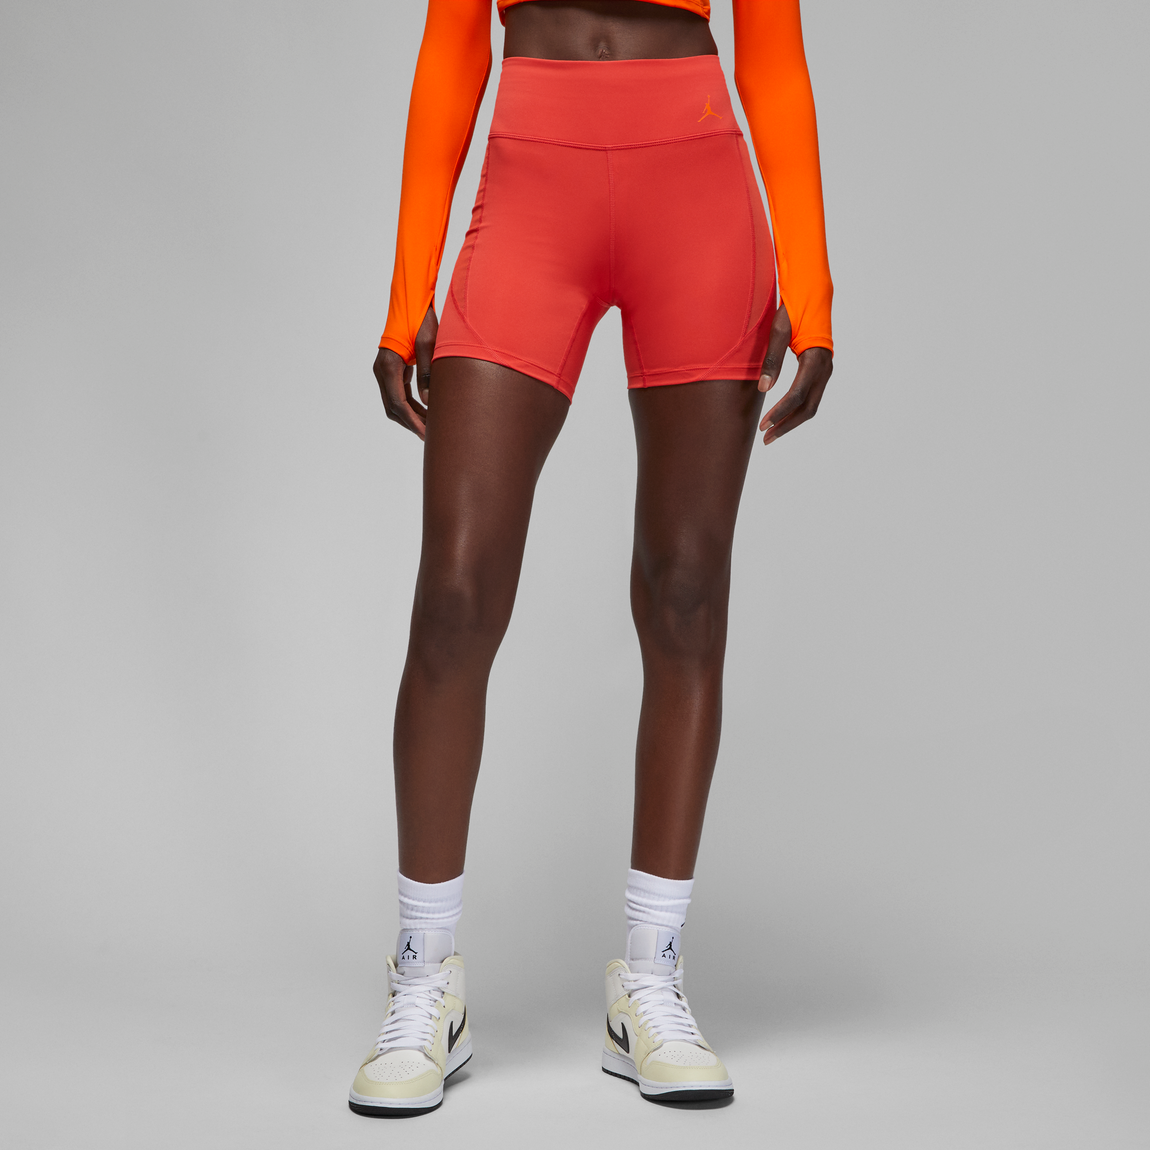 Jordan Women's Dri-Fit Sport Shorts (Lobster/Safety Orange) - Jordan Women's Dri-Fit Sport Shorts (Lobster/Safety Orange) - 